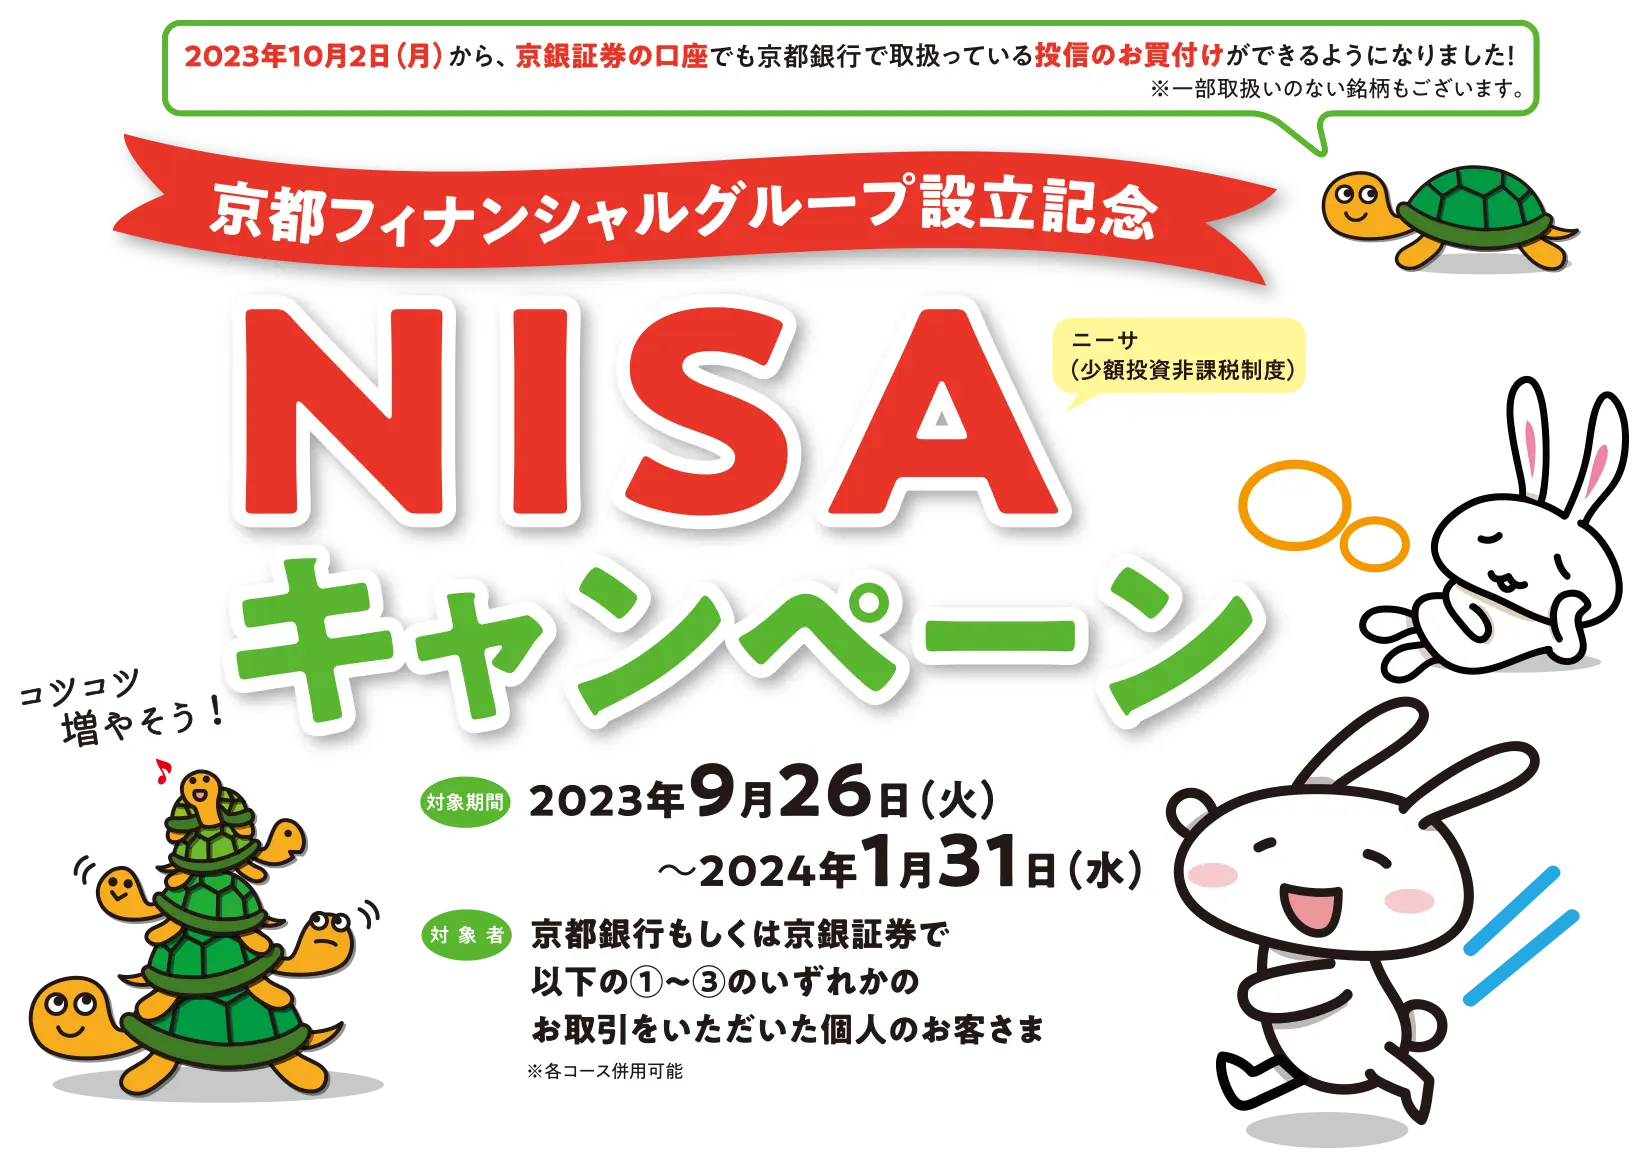 京都フィナンシャルグループ設立記念「NISAキャンペーン」